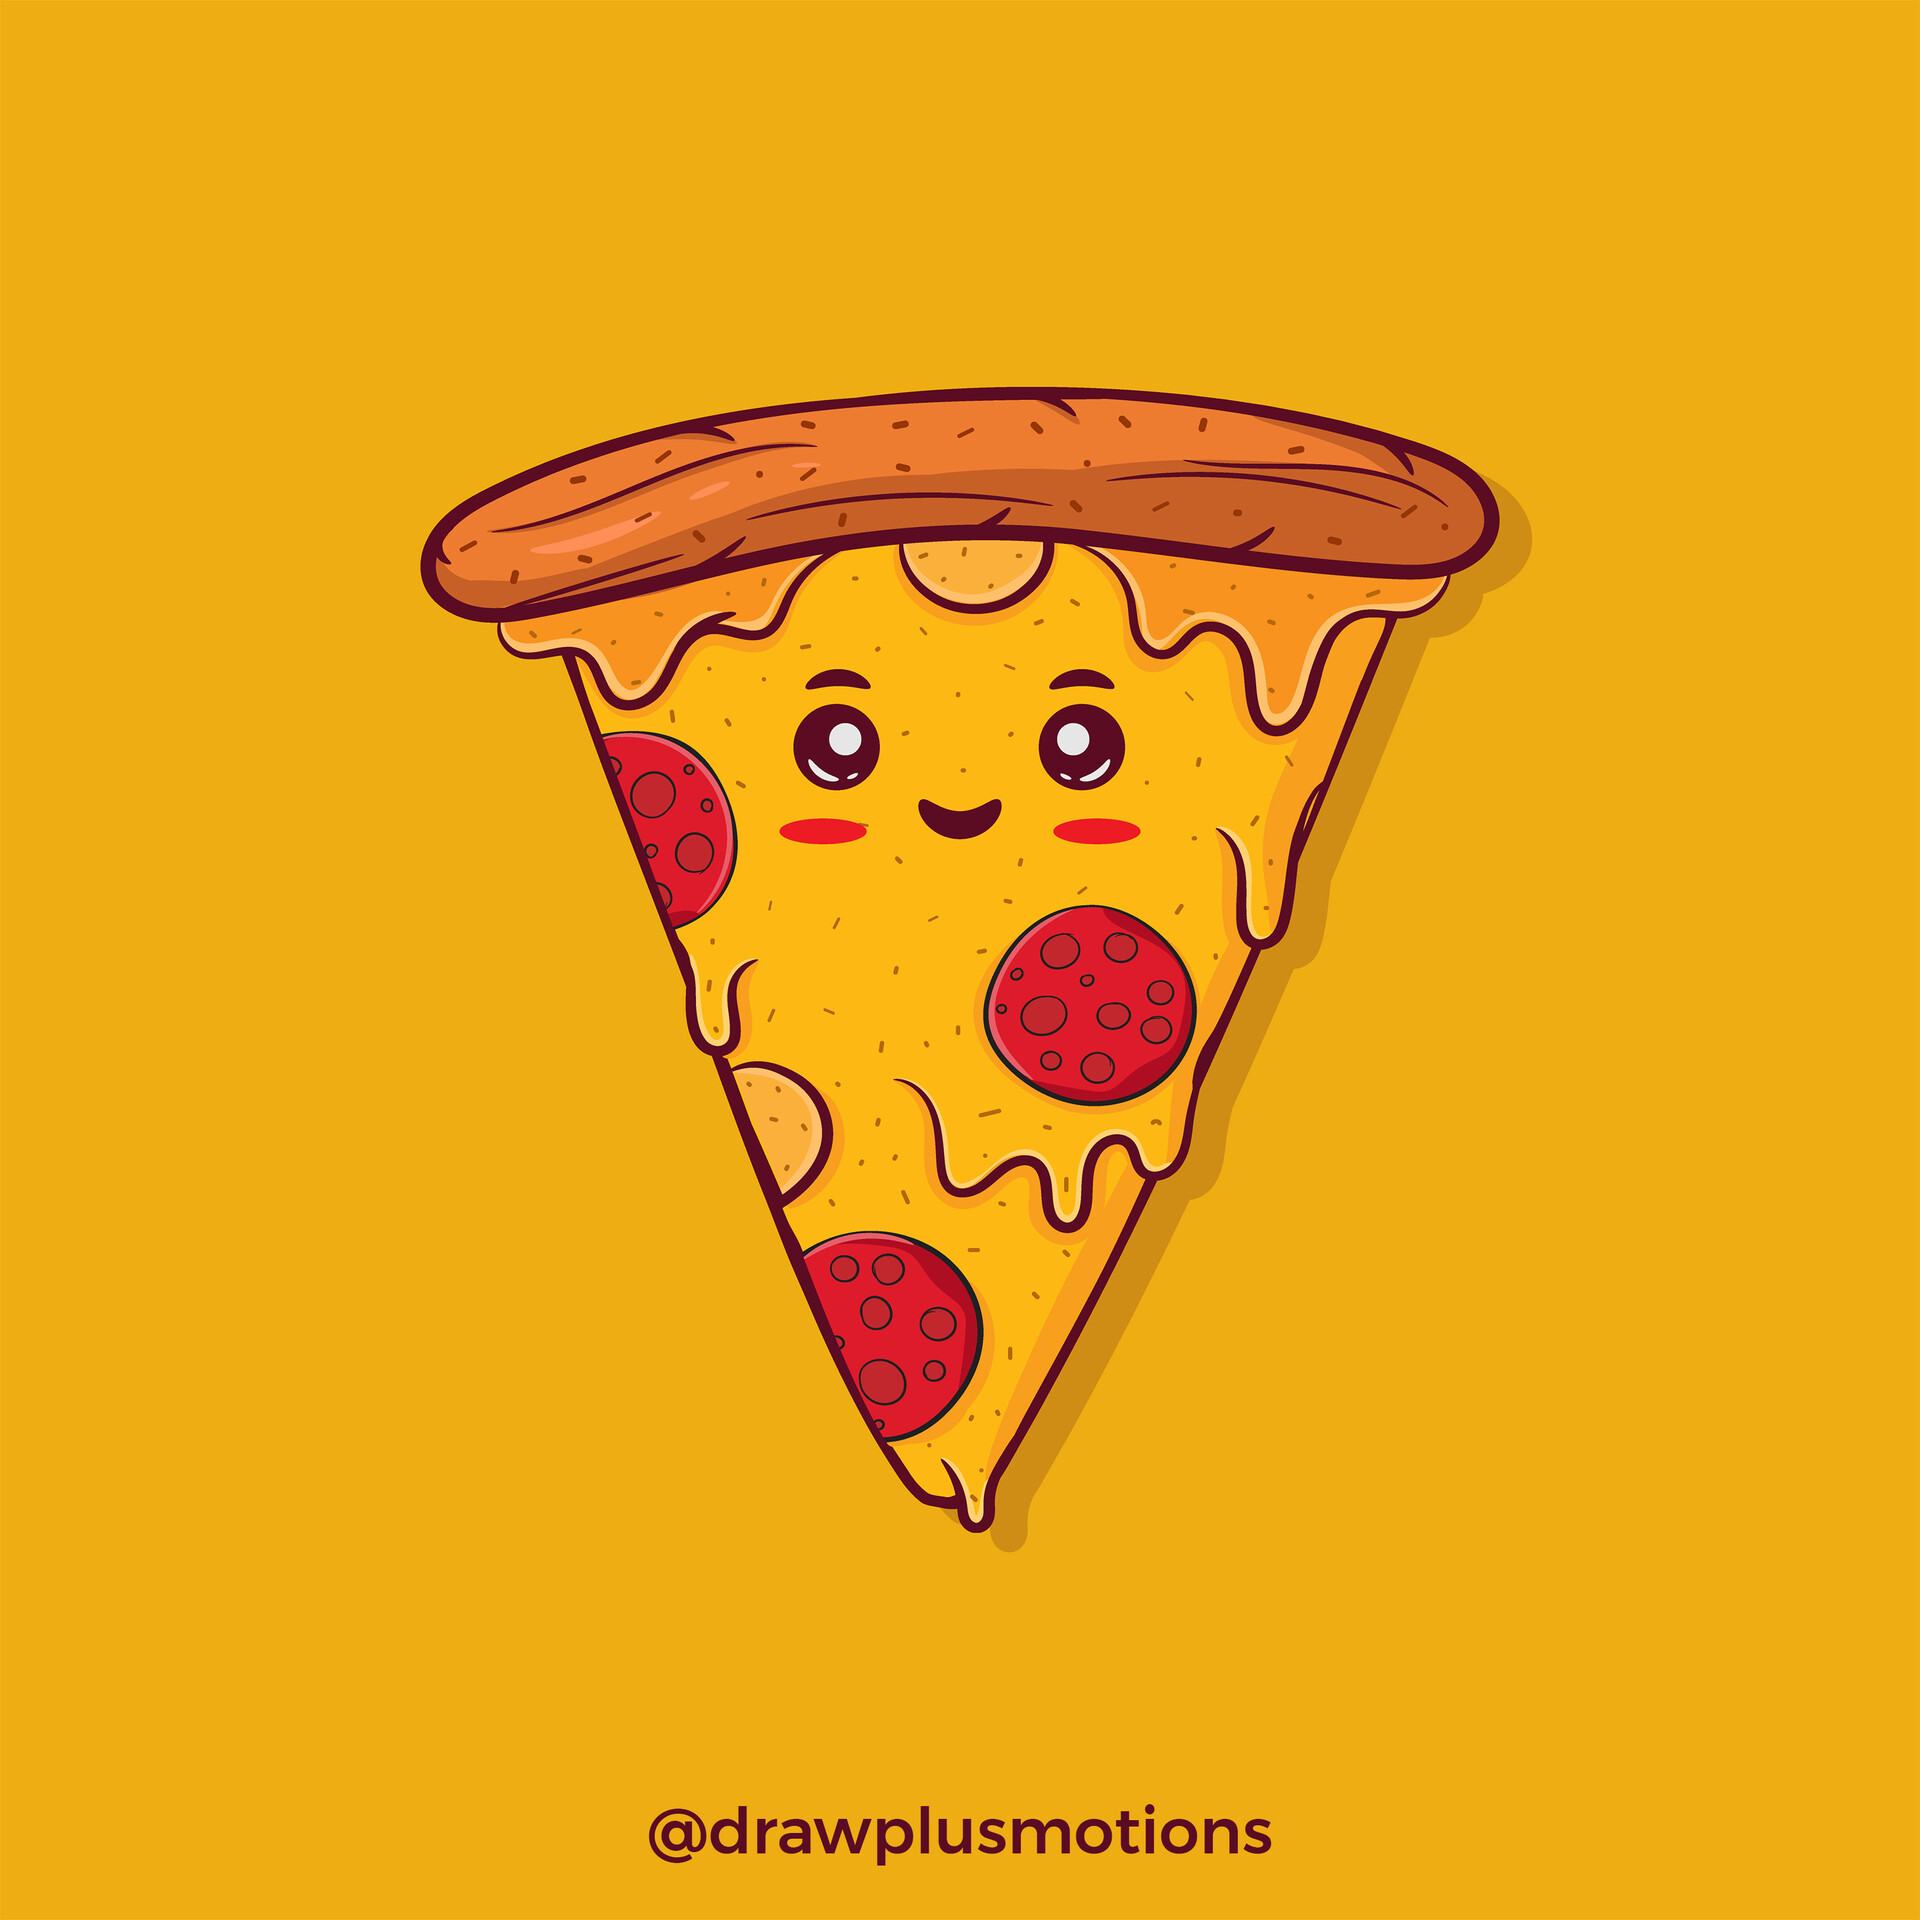 ArtStation - Cute pizza illustration